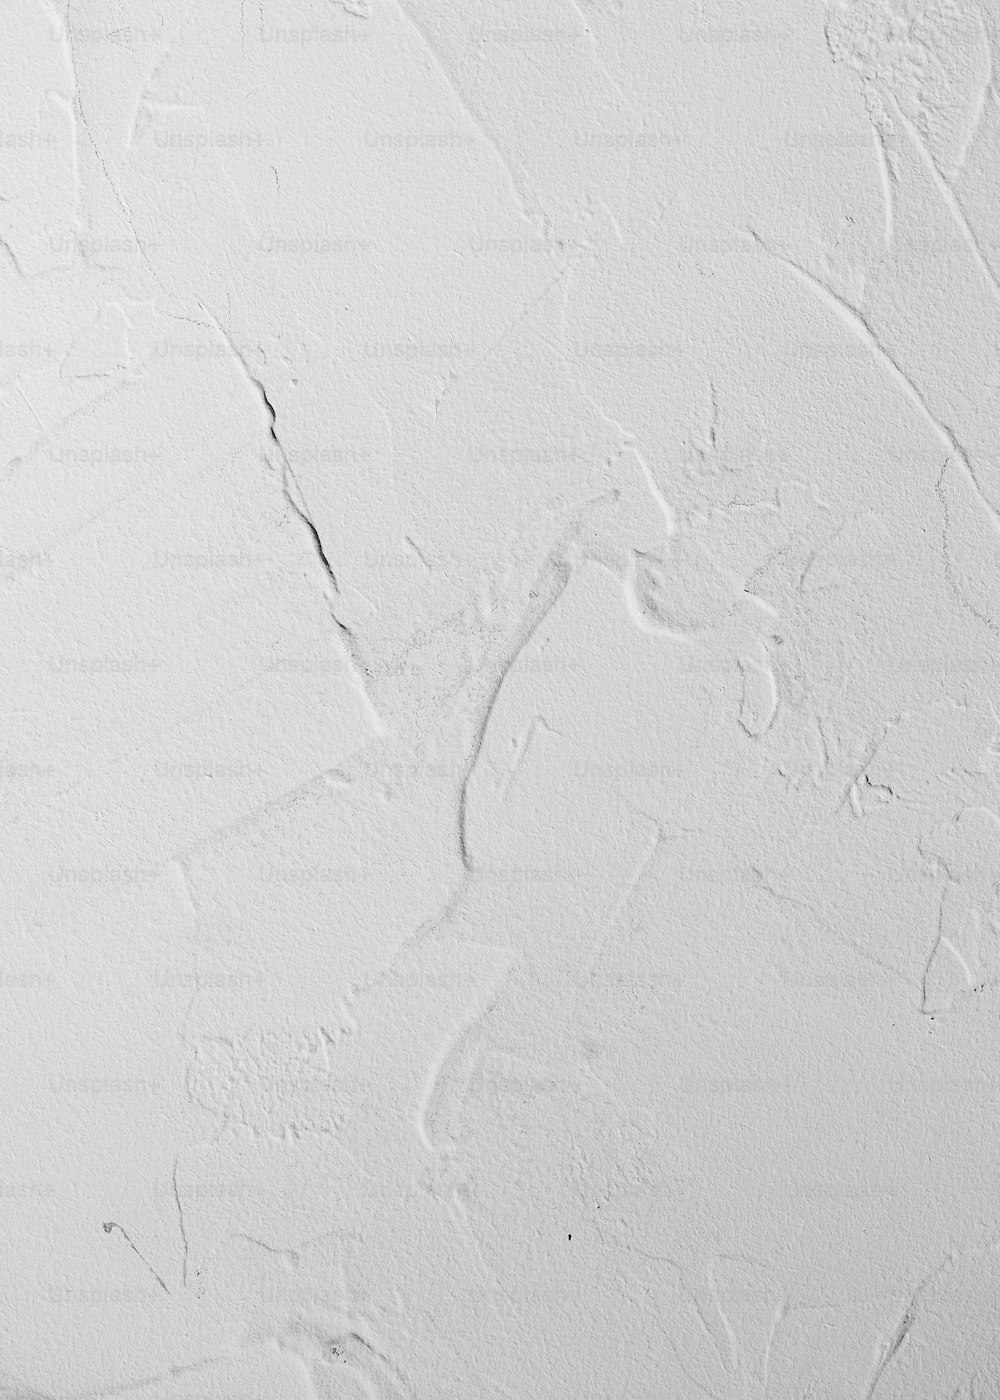 uma parede branca com um pouco de tinta branca sobre ela